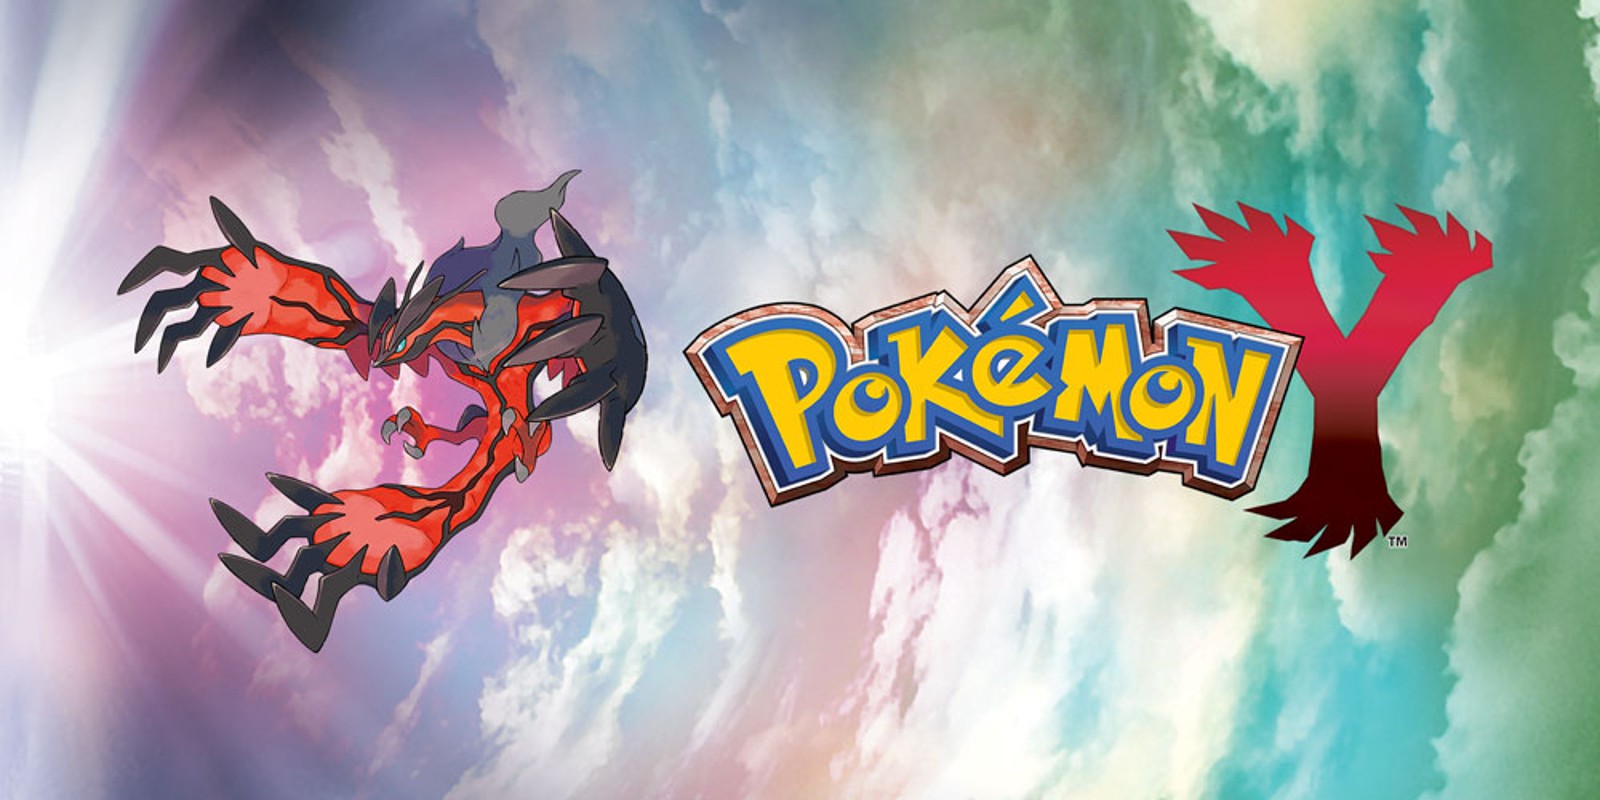 Pokémon X e Y são anunciados para o Nintendo 3DS com gráficos em 3D